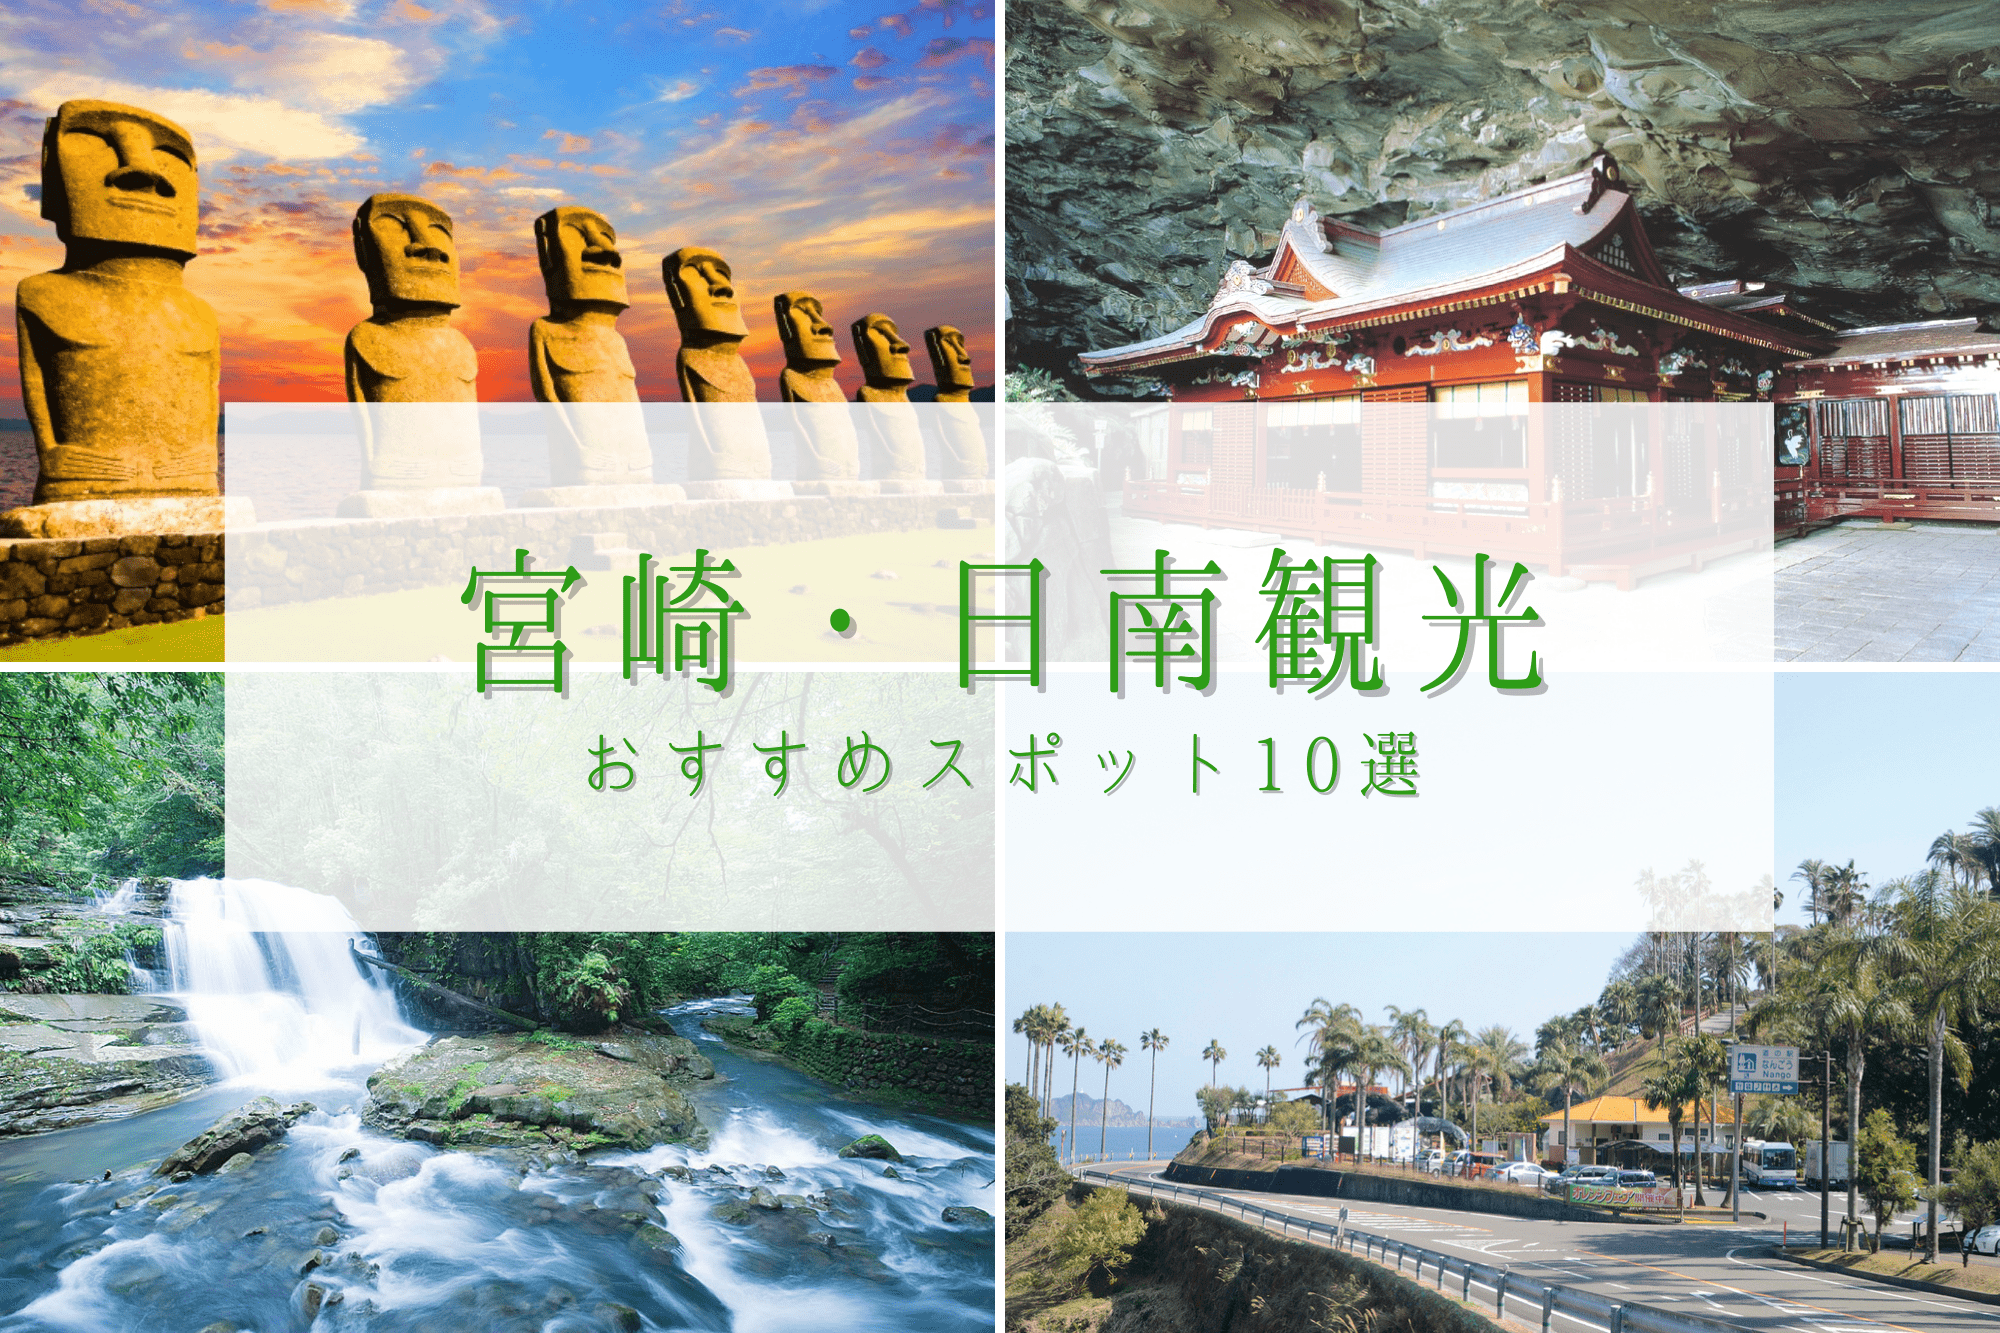 モアイの街 宮崎 日南市の観光スポット10選 歴史や自然の魅力たっぷり 九州の観光情報はfeel Kyushu